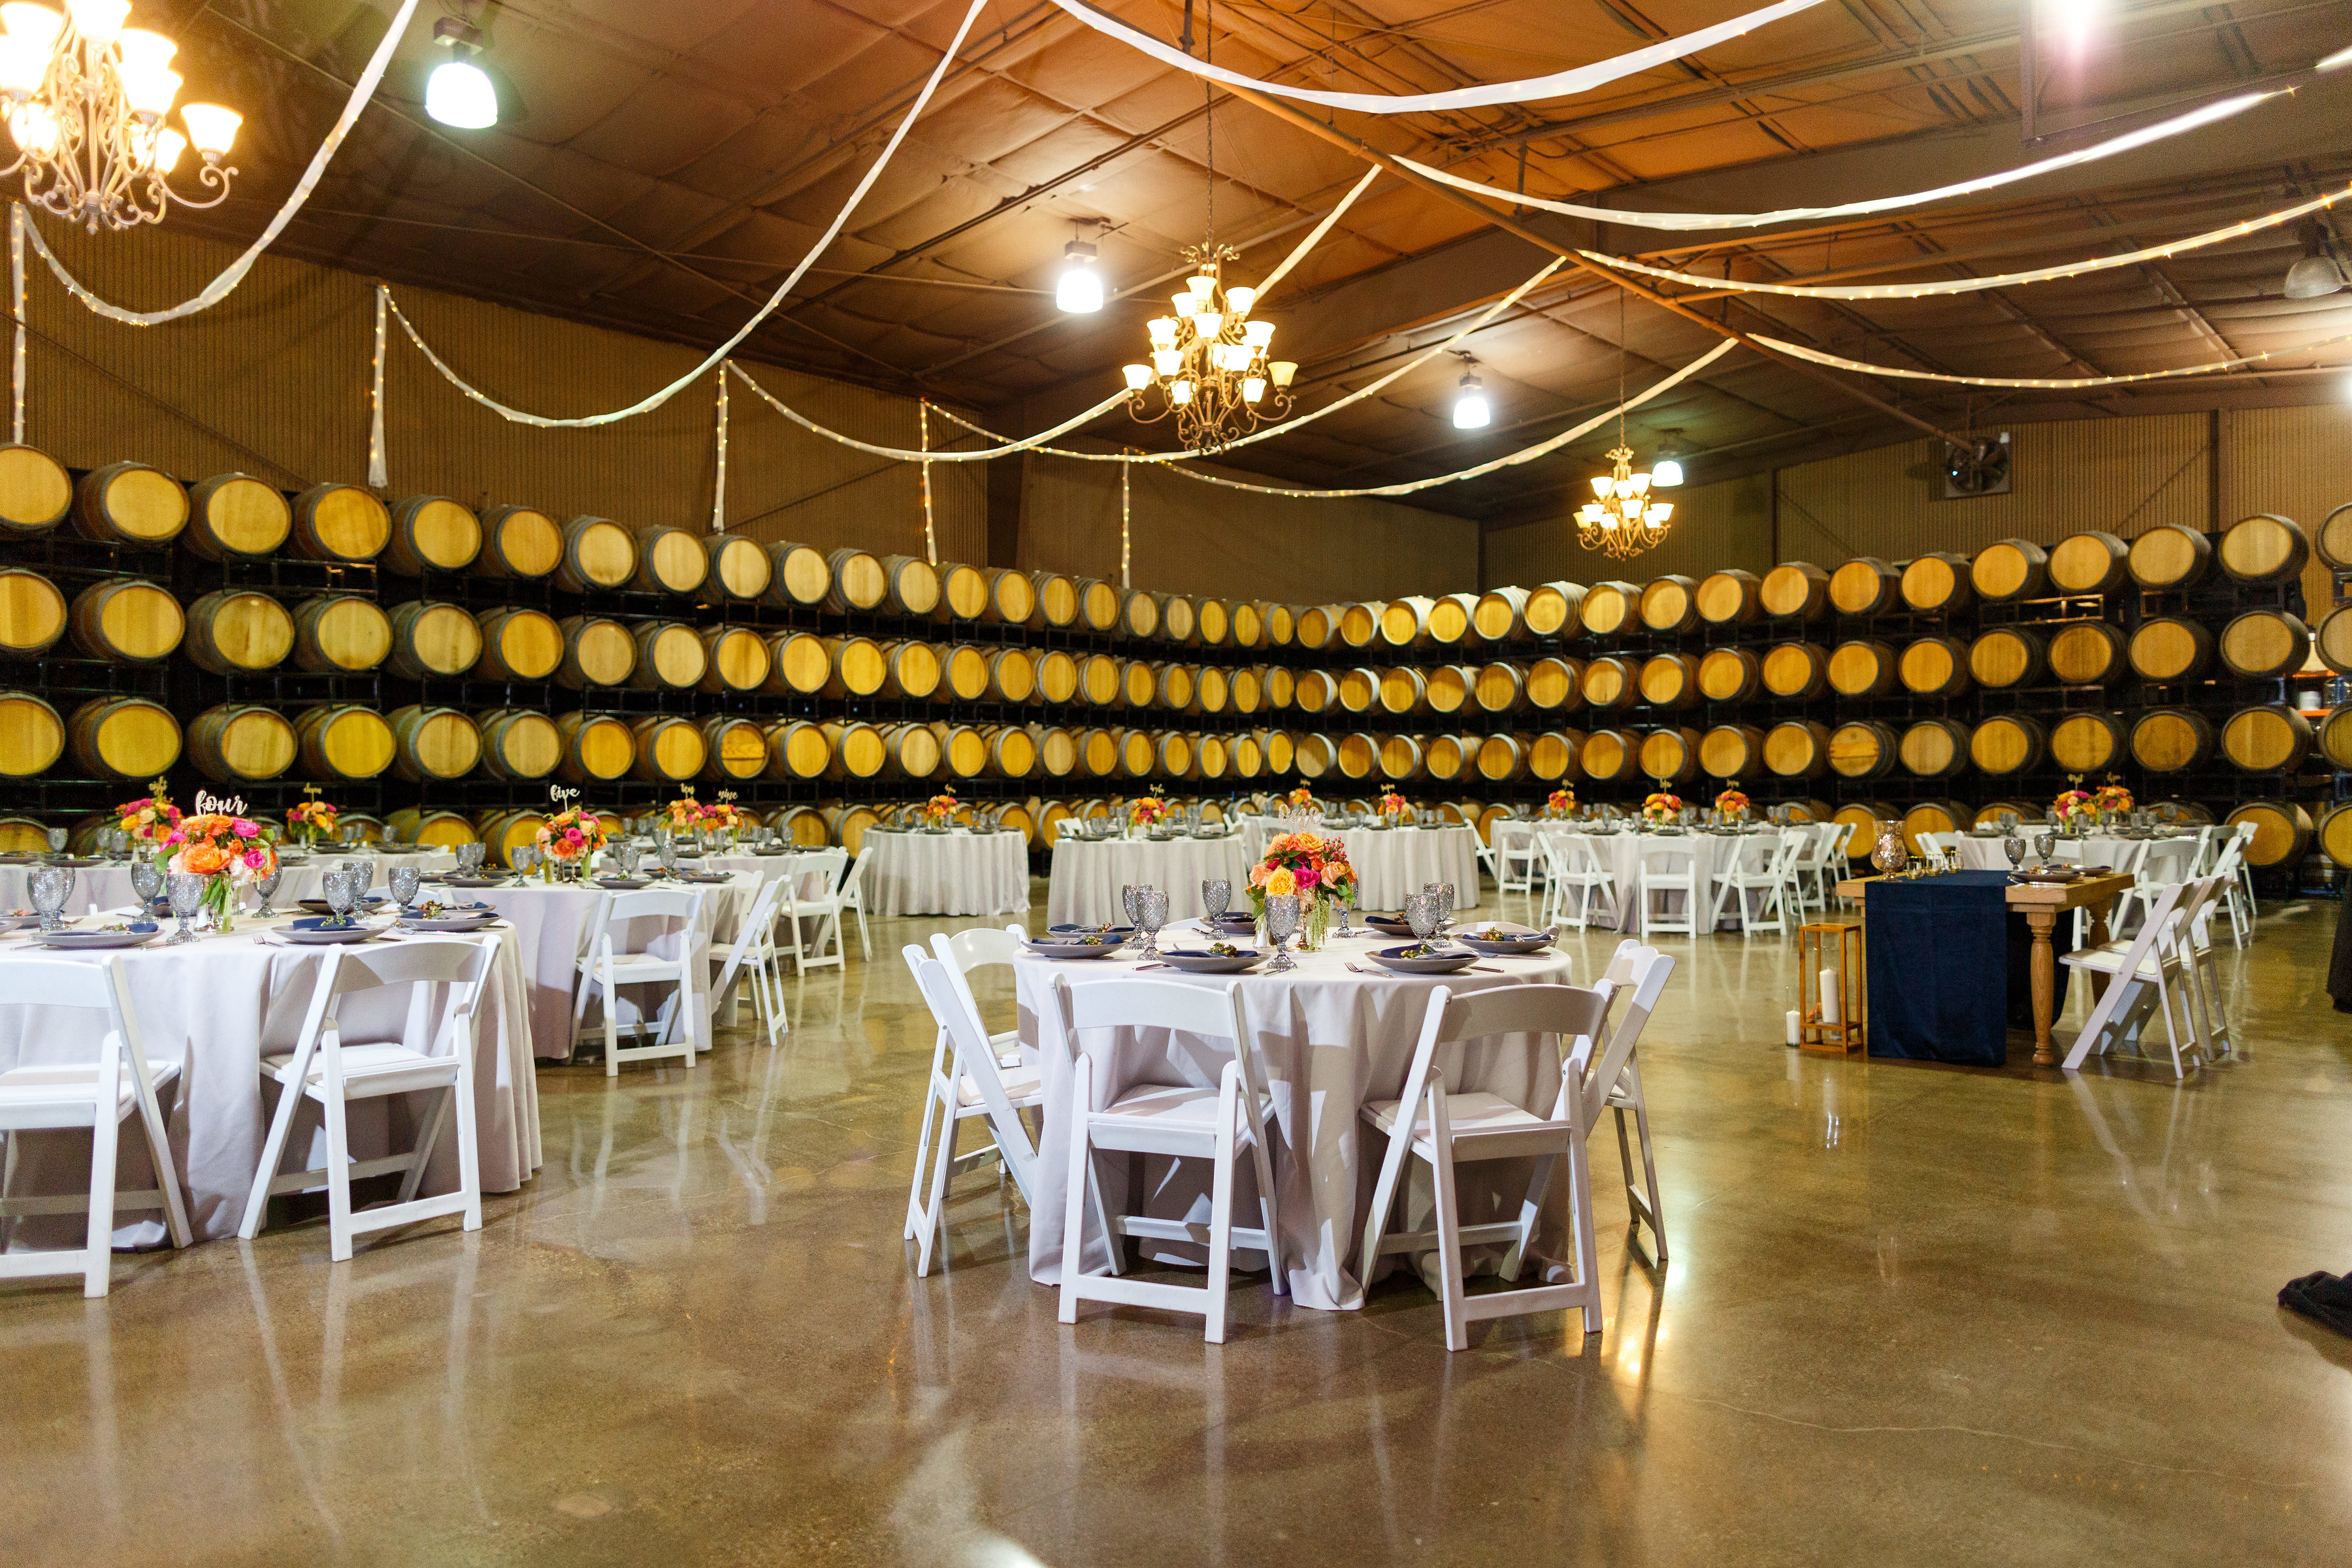 Central Coast Vineyard Wedding Venues - Opolo Vineyards